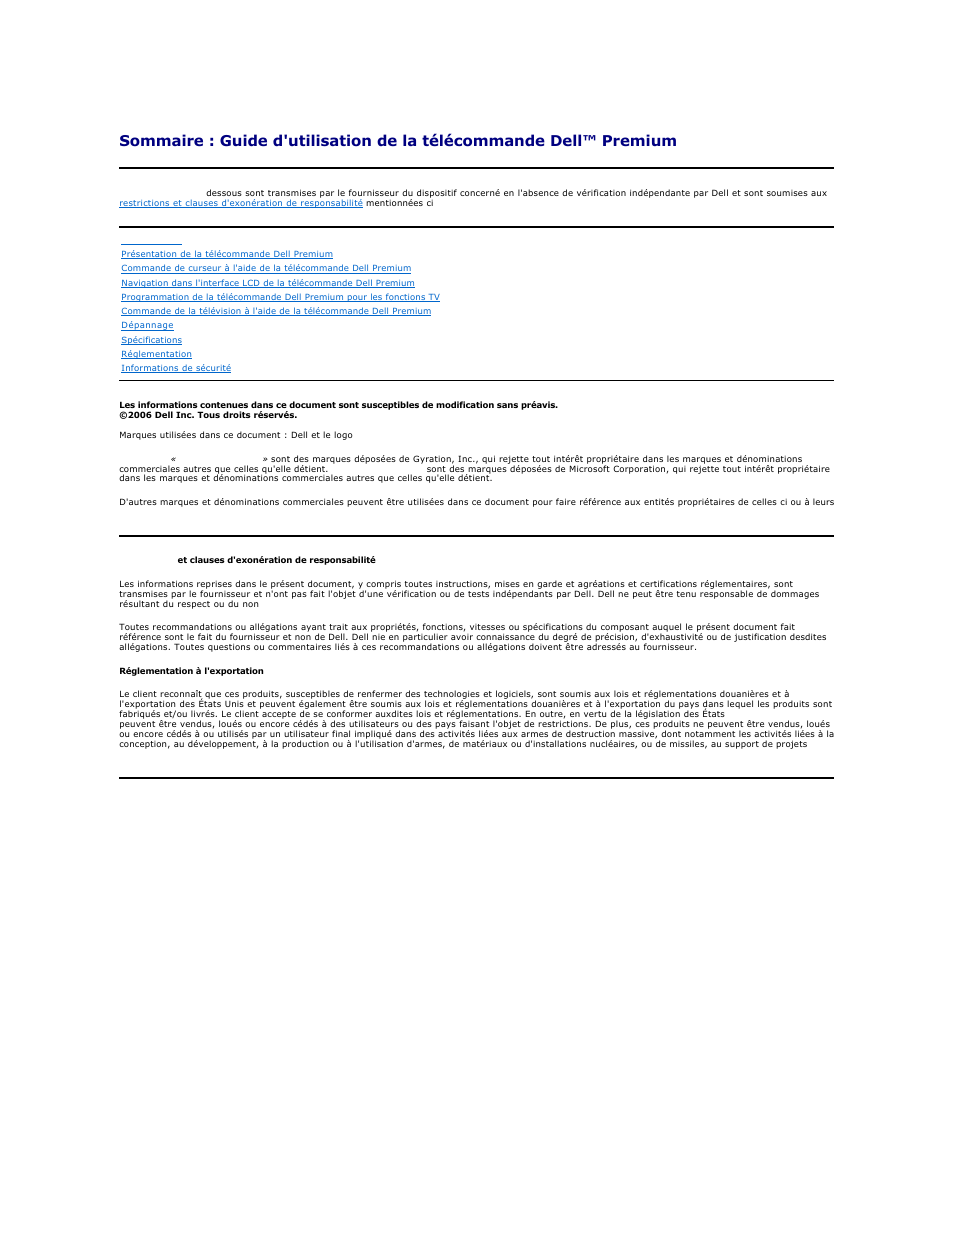 Dell Premium Remote Control Manuel d'utilisation | Pages: 21